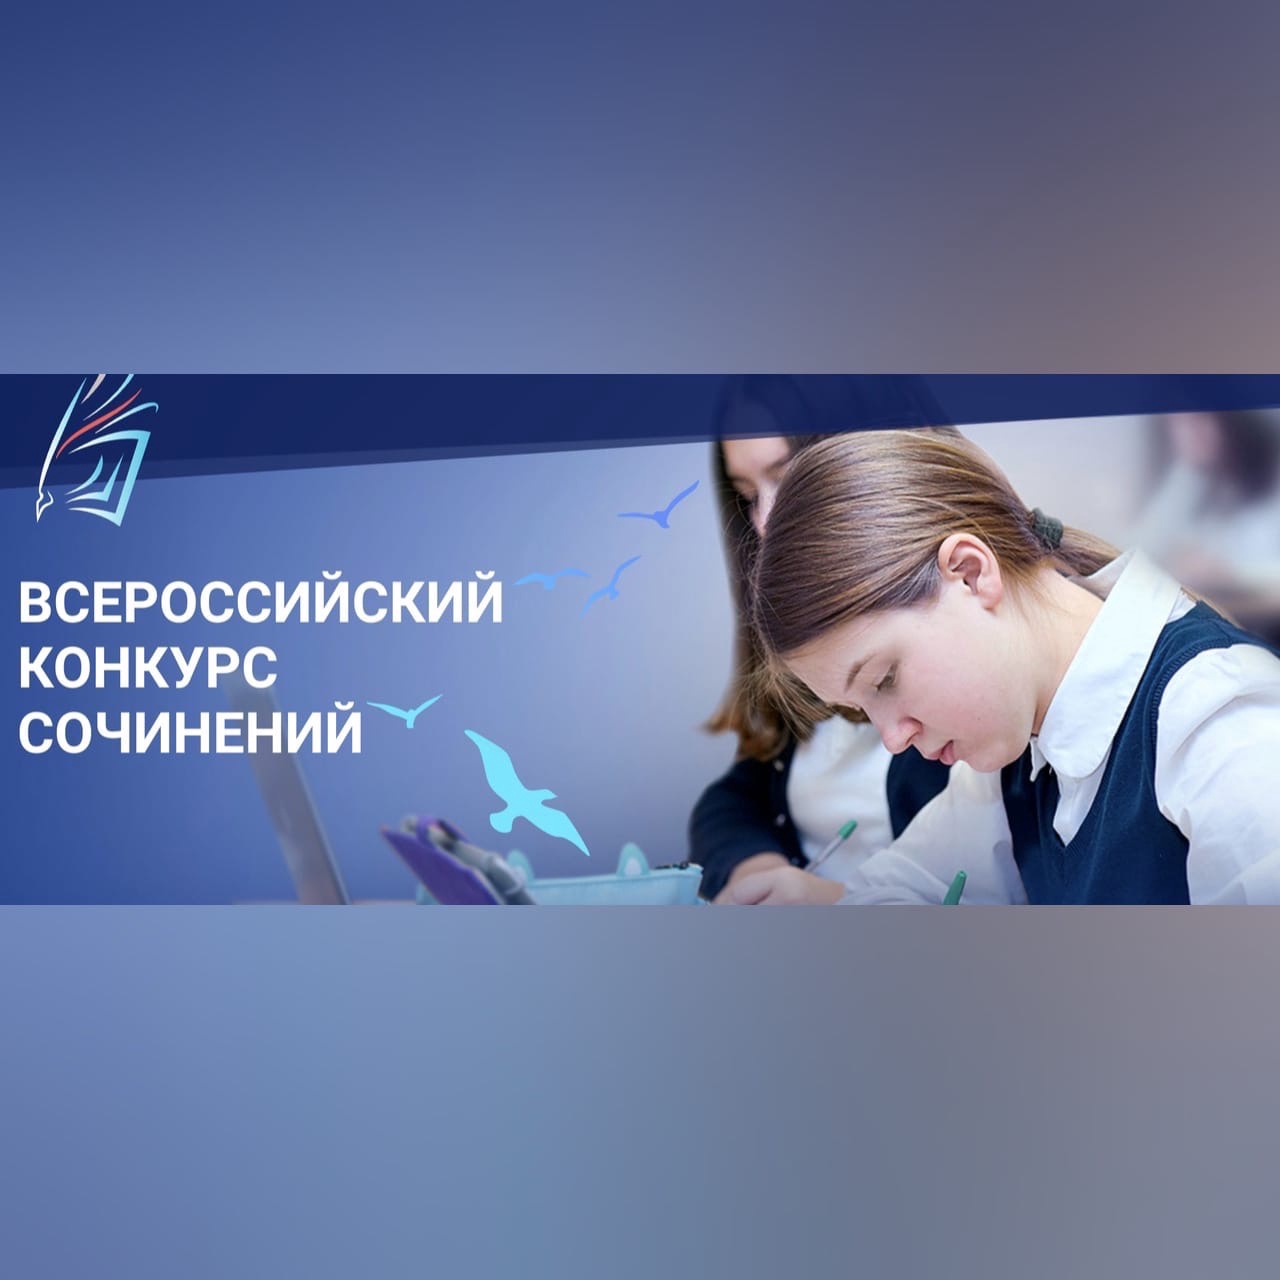 3 смоленских школьника победили во Всероссийском конкурсе сочинений 2021